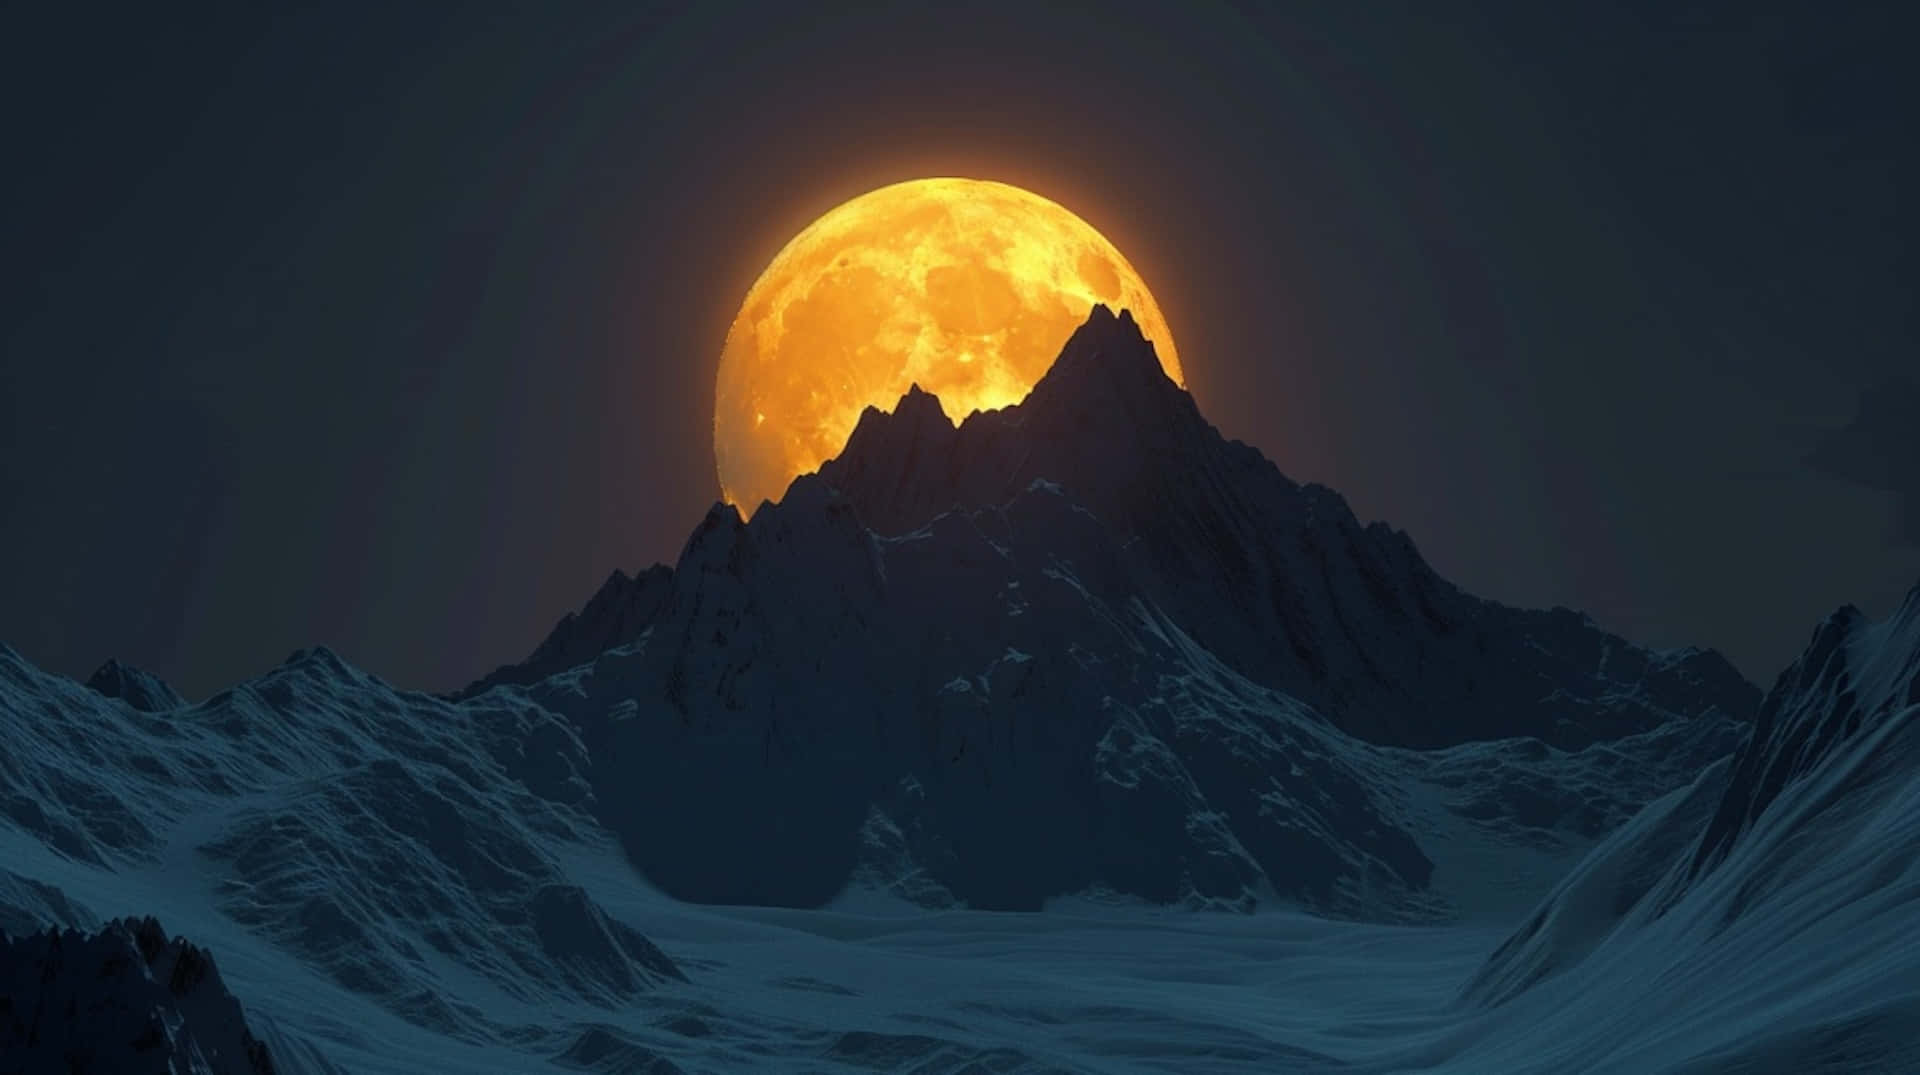 Golden Moonset Over Mountain Peaks Wallpaper